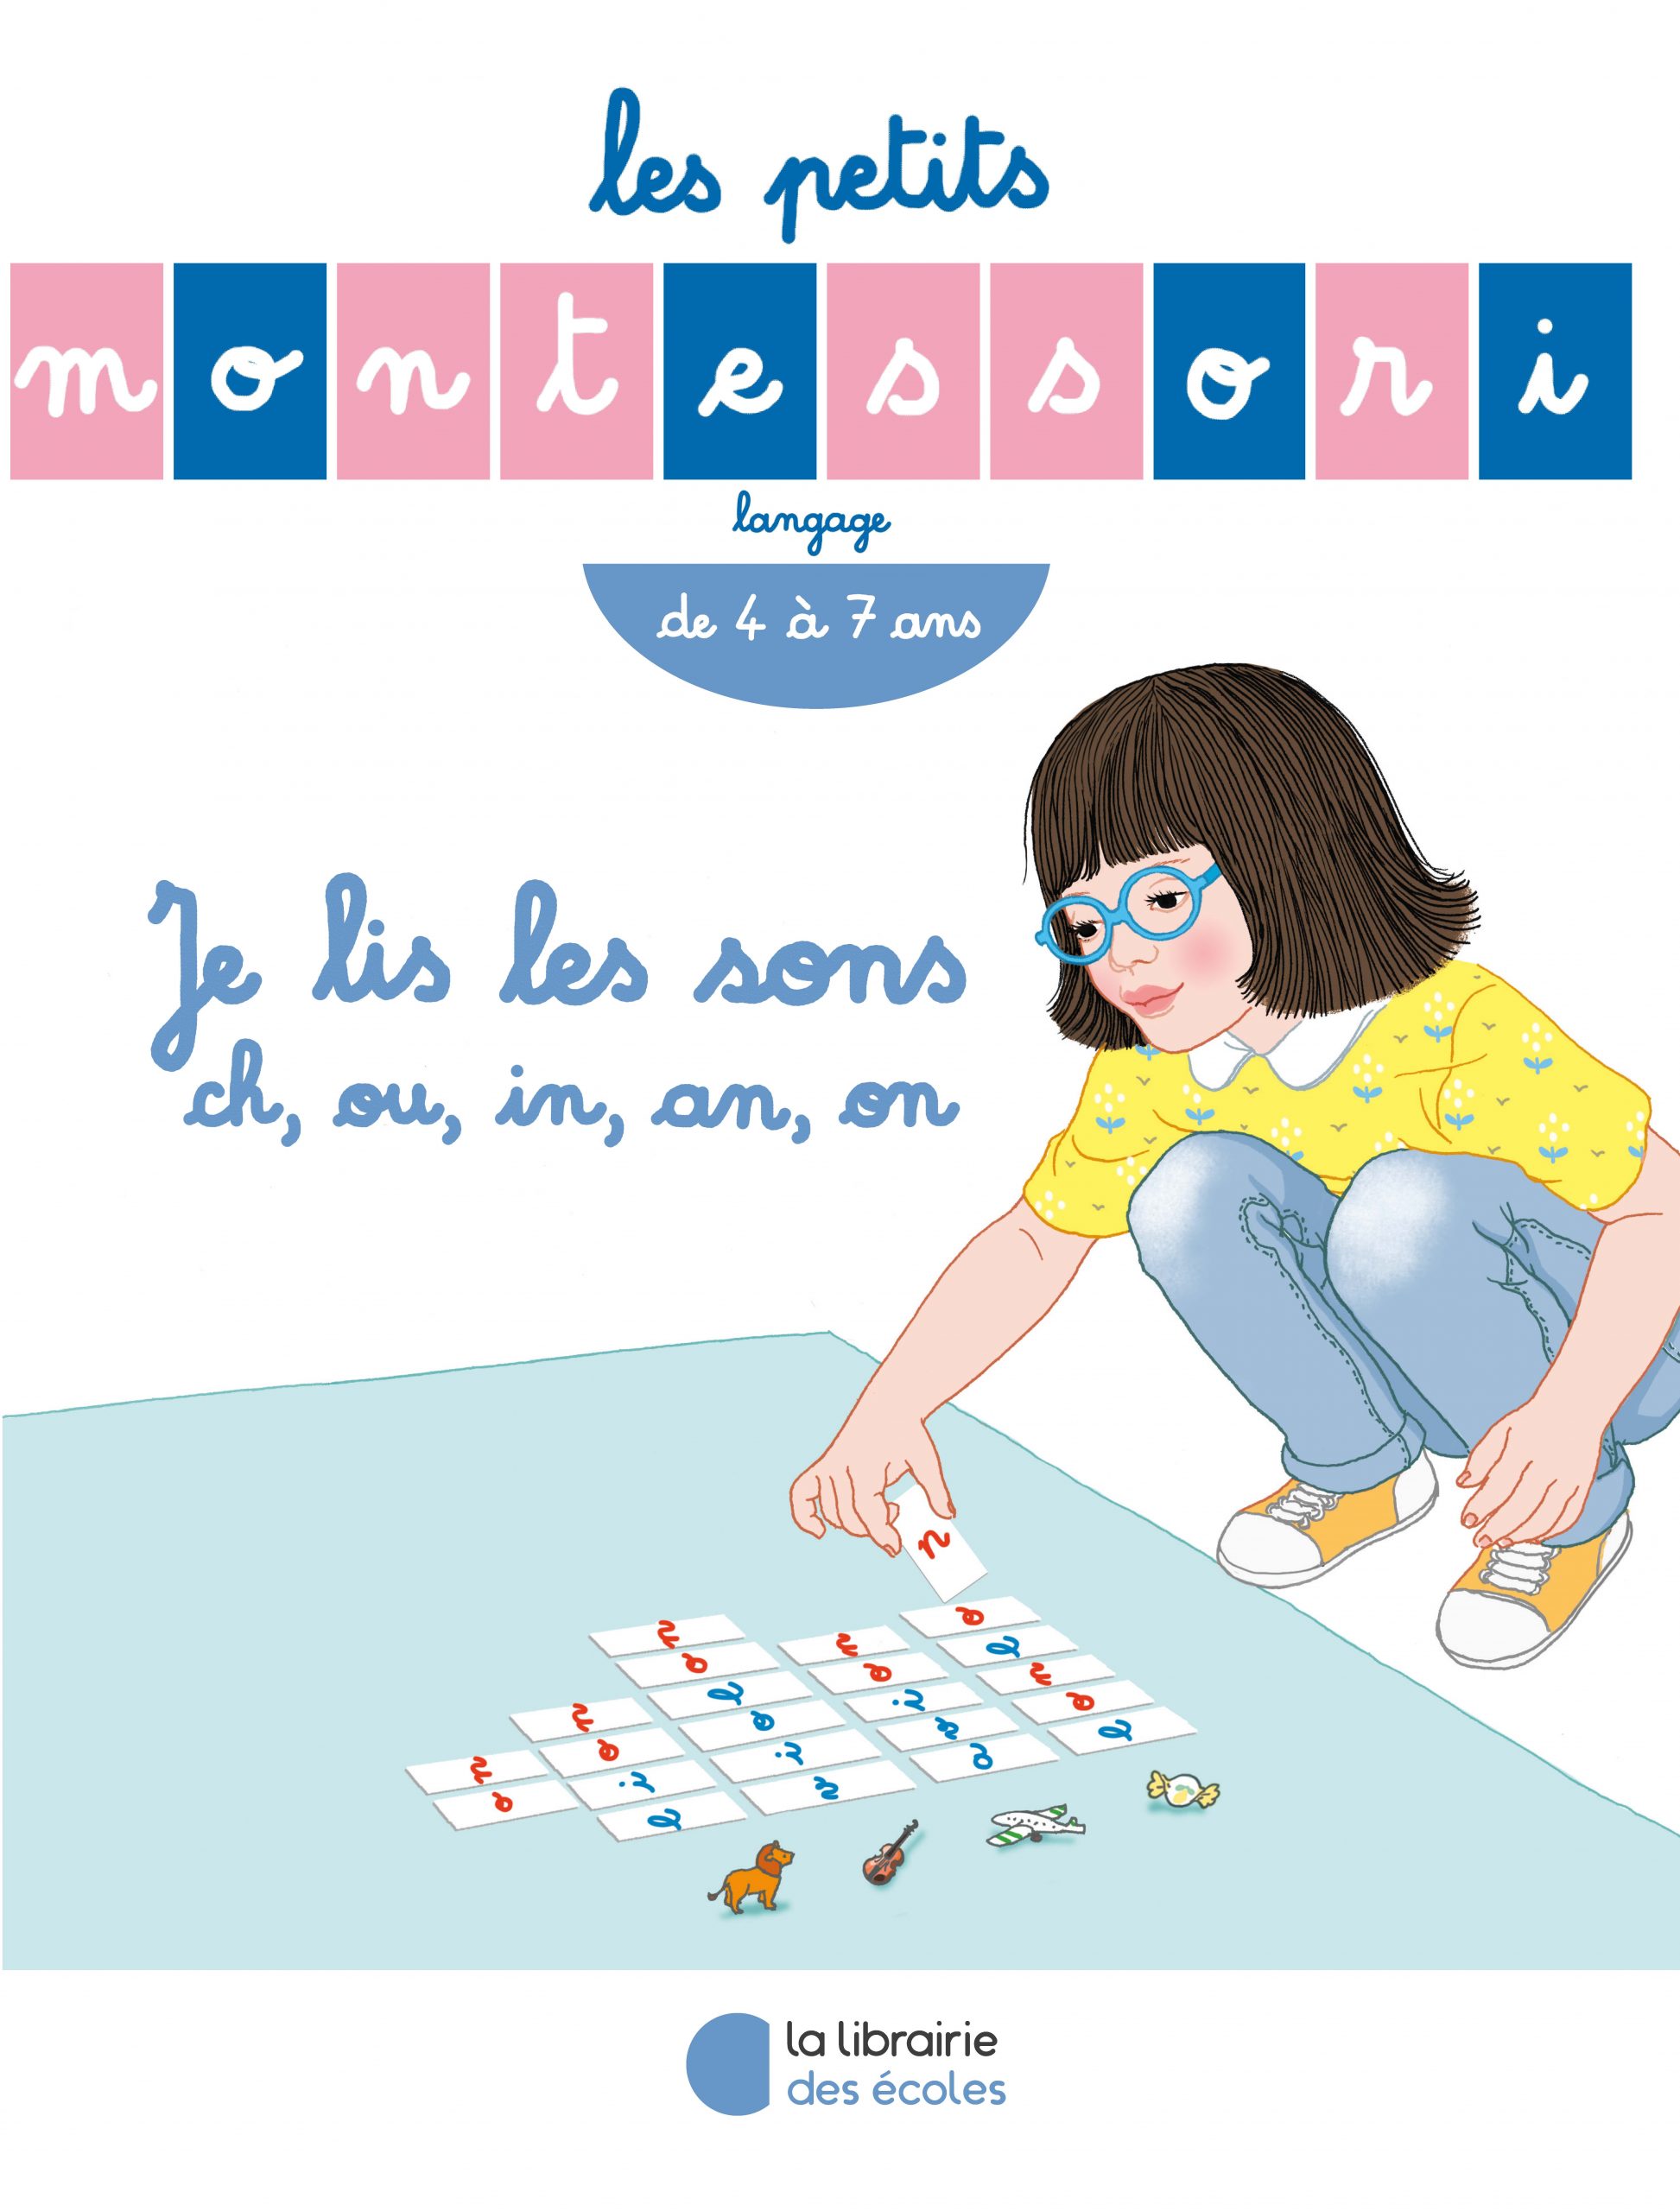 Les Petits Montessori - Je lis les sons ch, ou, in, an, on - La